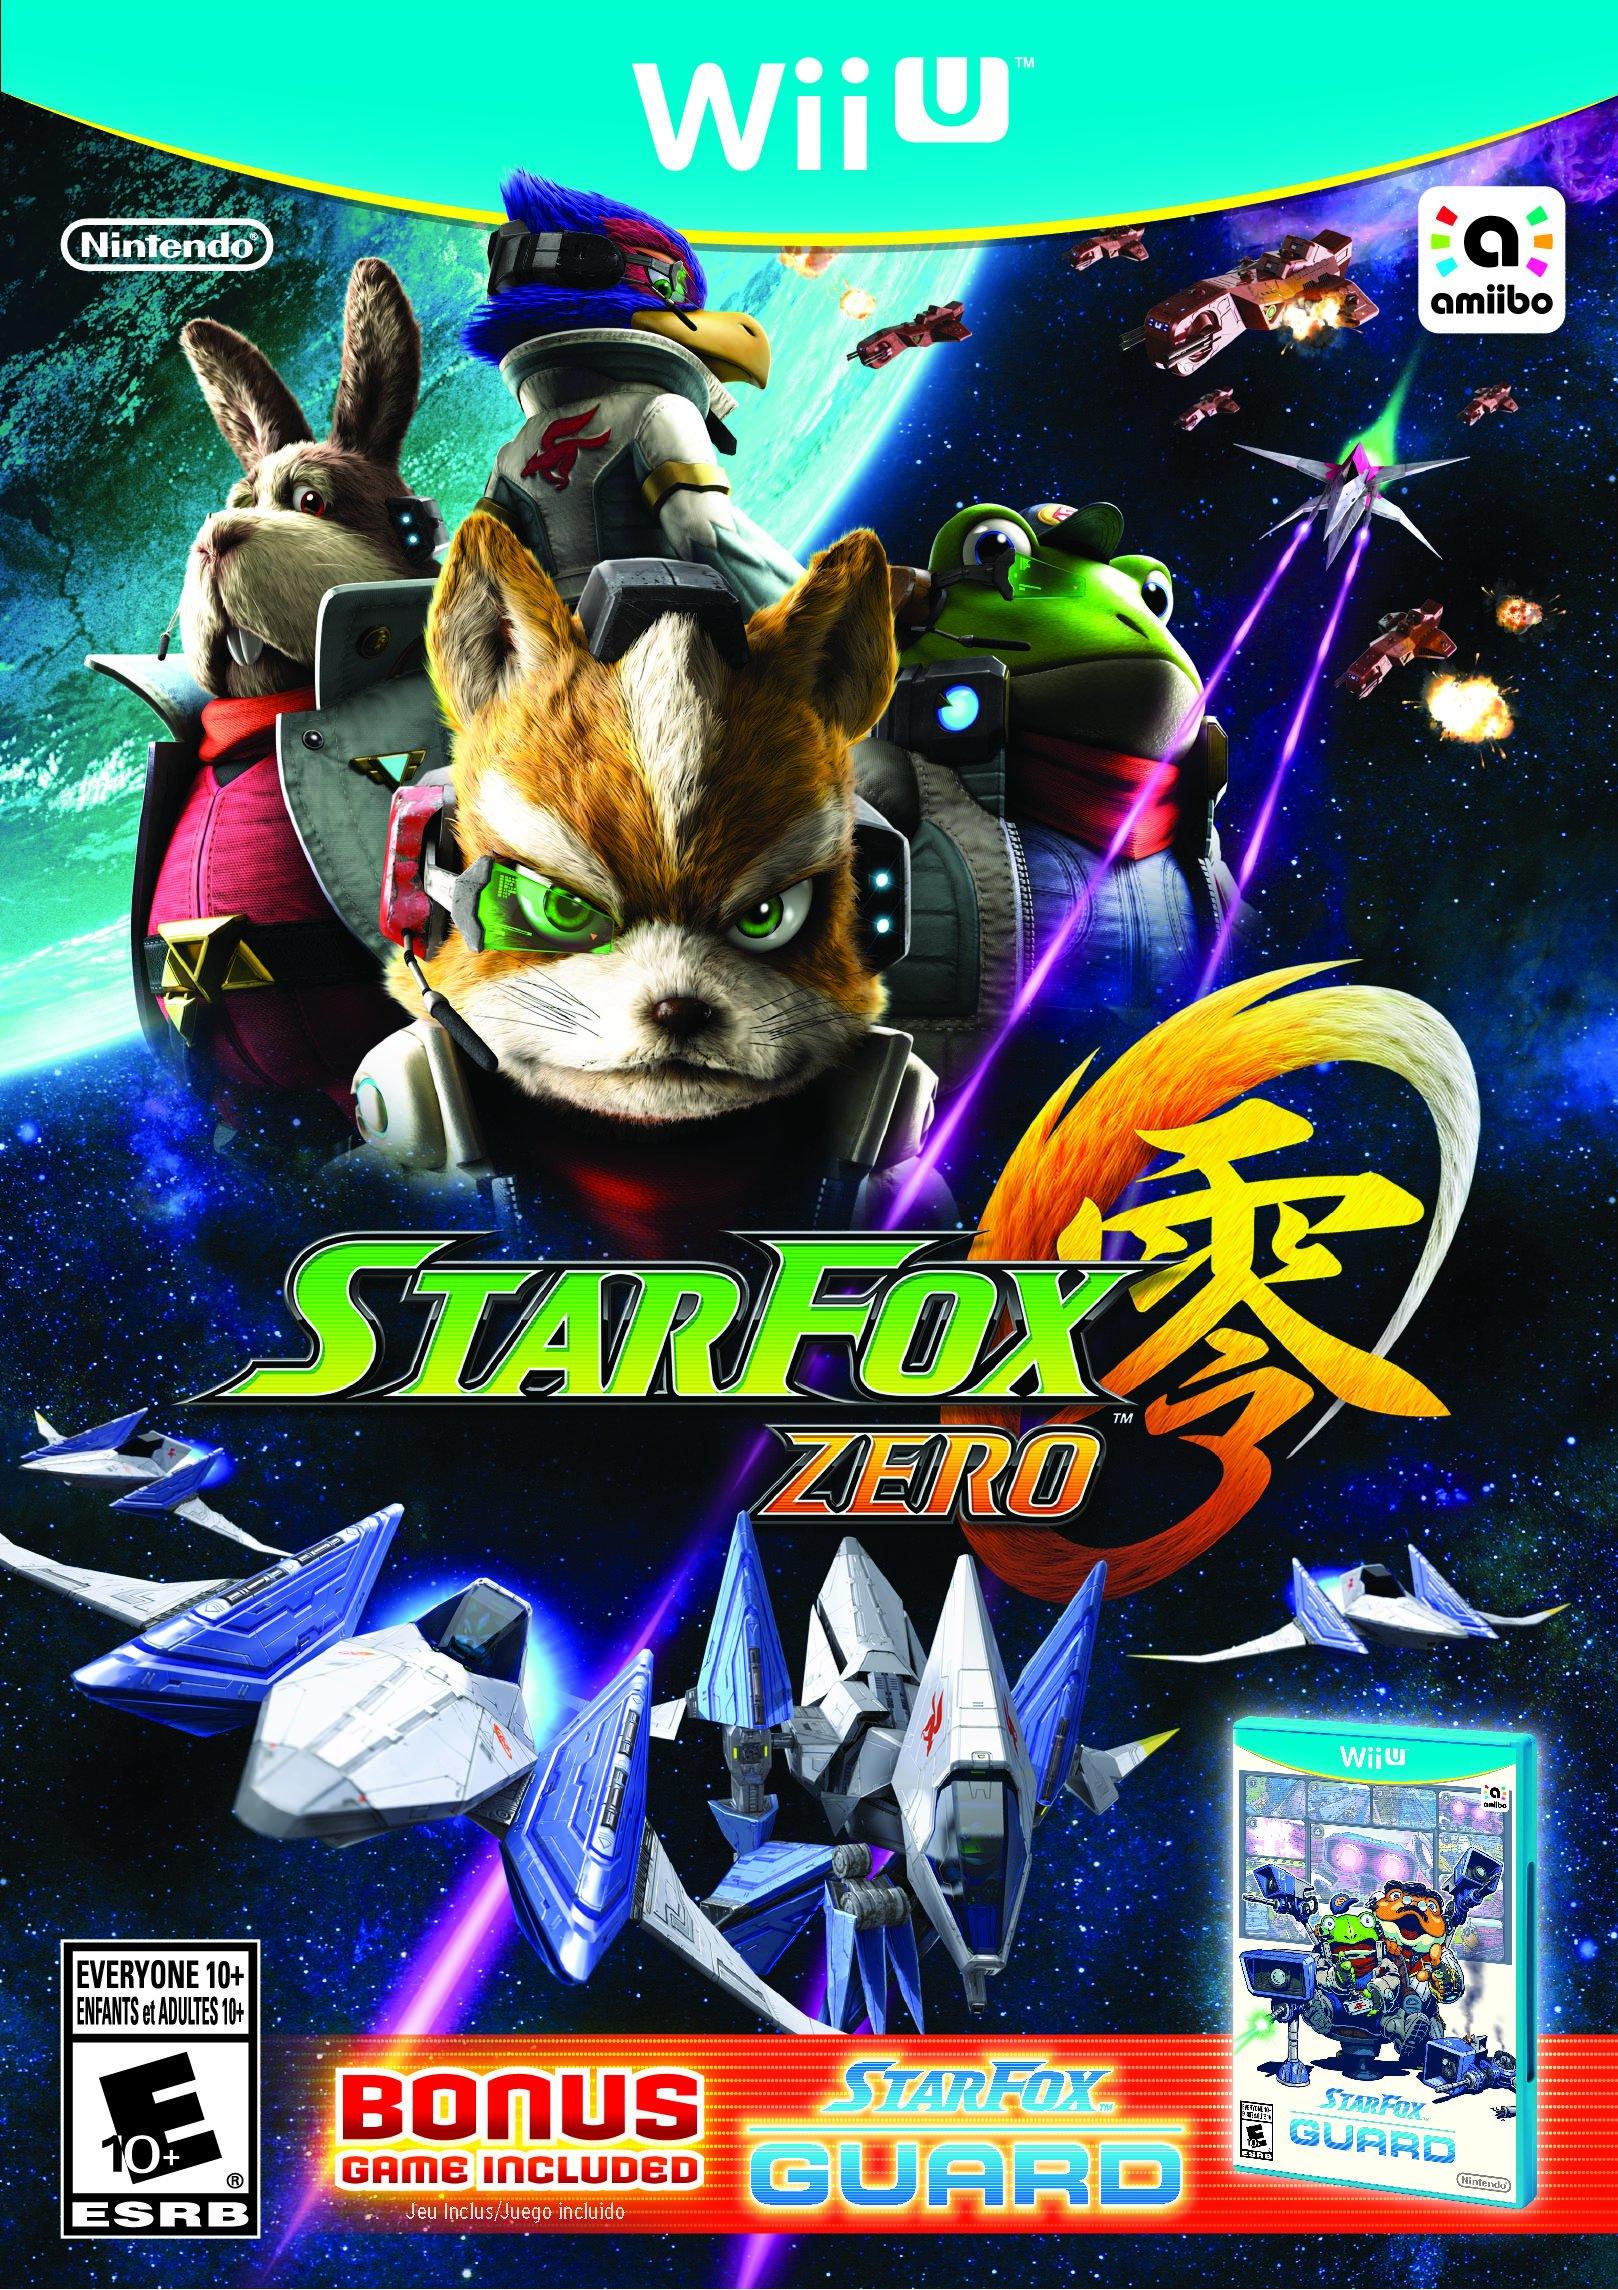 Star Fox Adventures – Nintendobound